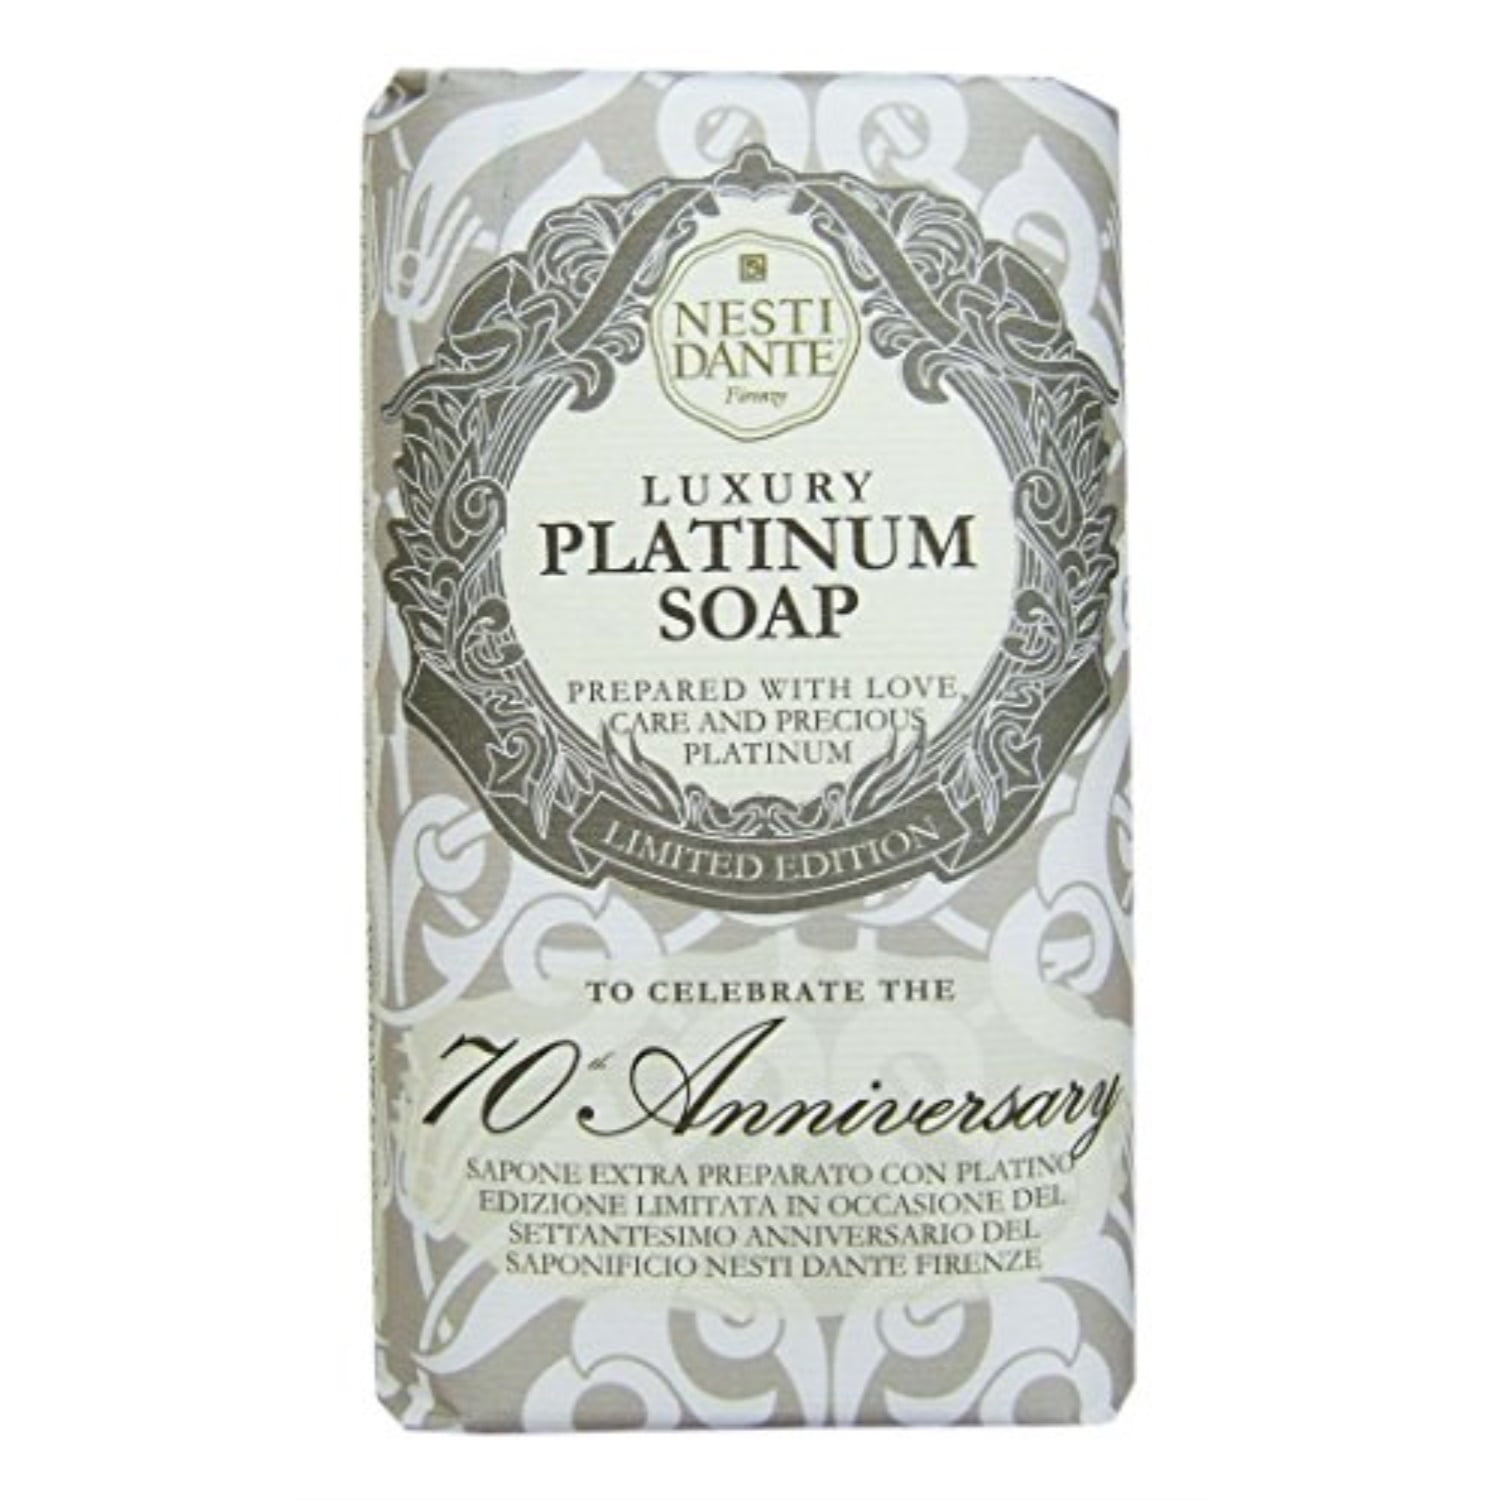 nesti dante anniversary soap with precious platinum edition) 250g/8.8oz - Walmart.com